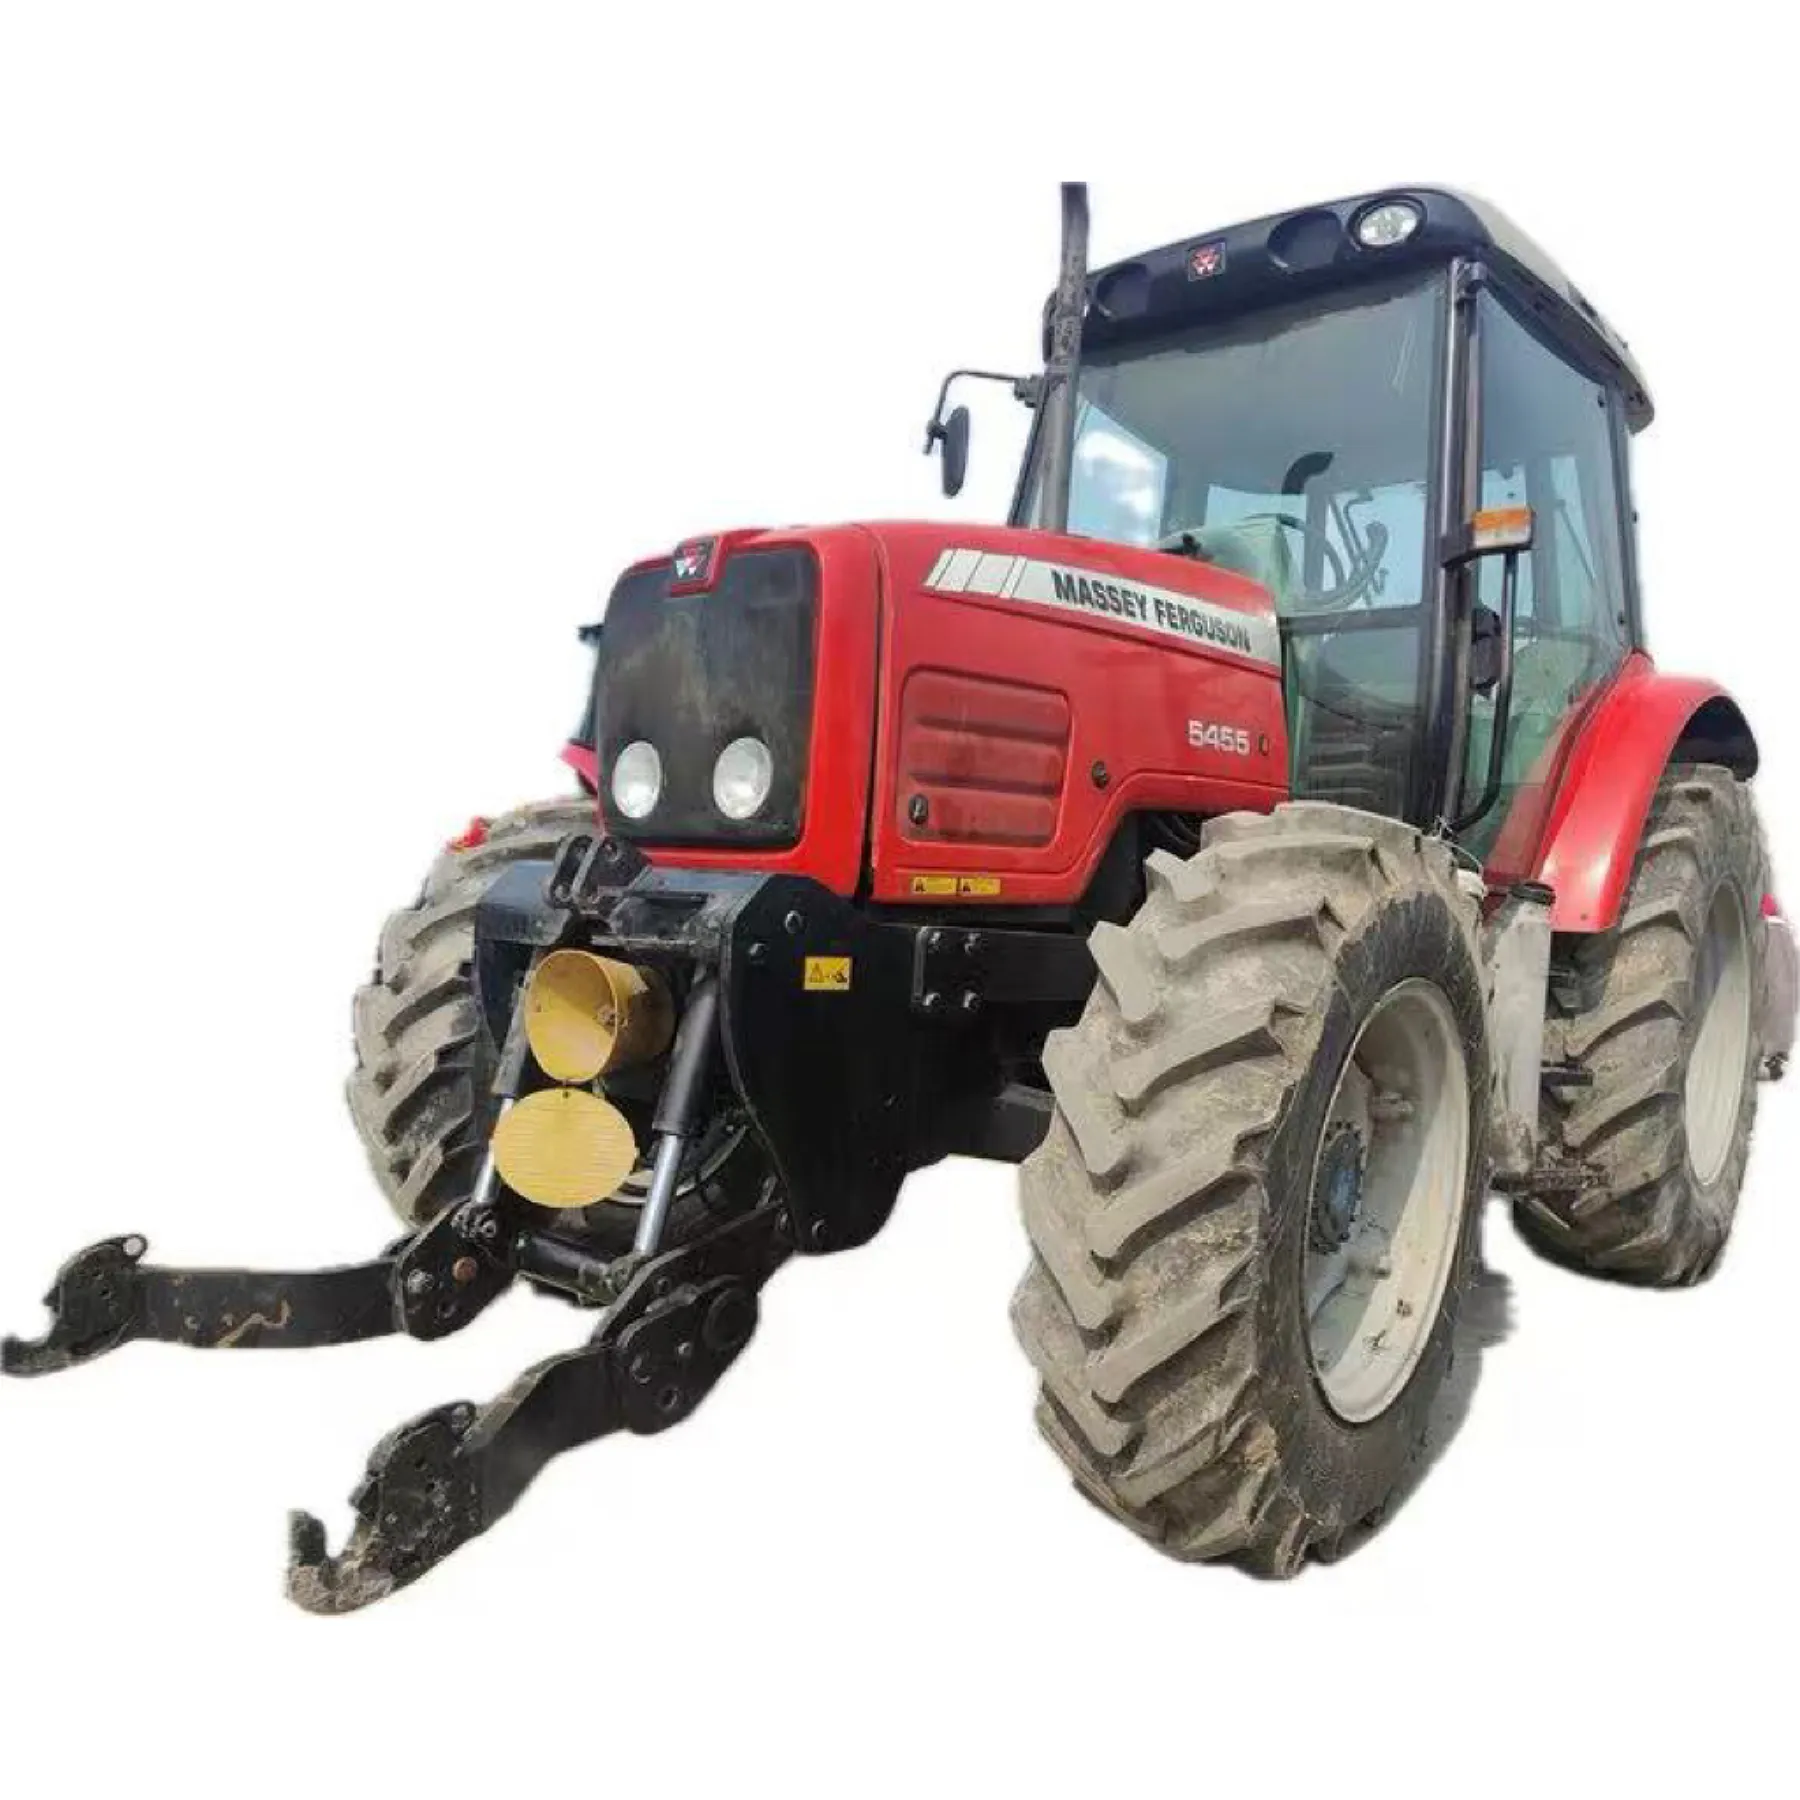 Satılık tarım traktörleri Massey Ferguson 5455